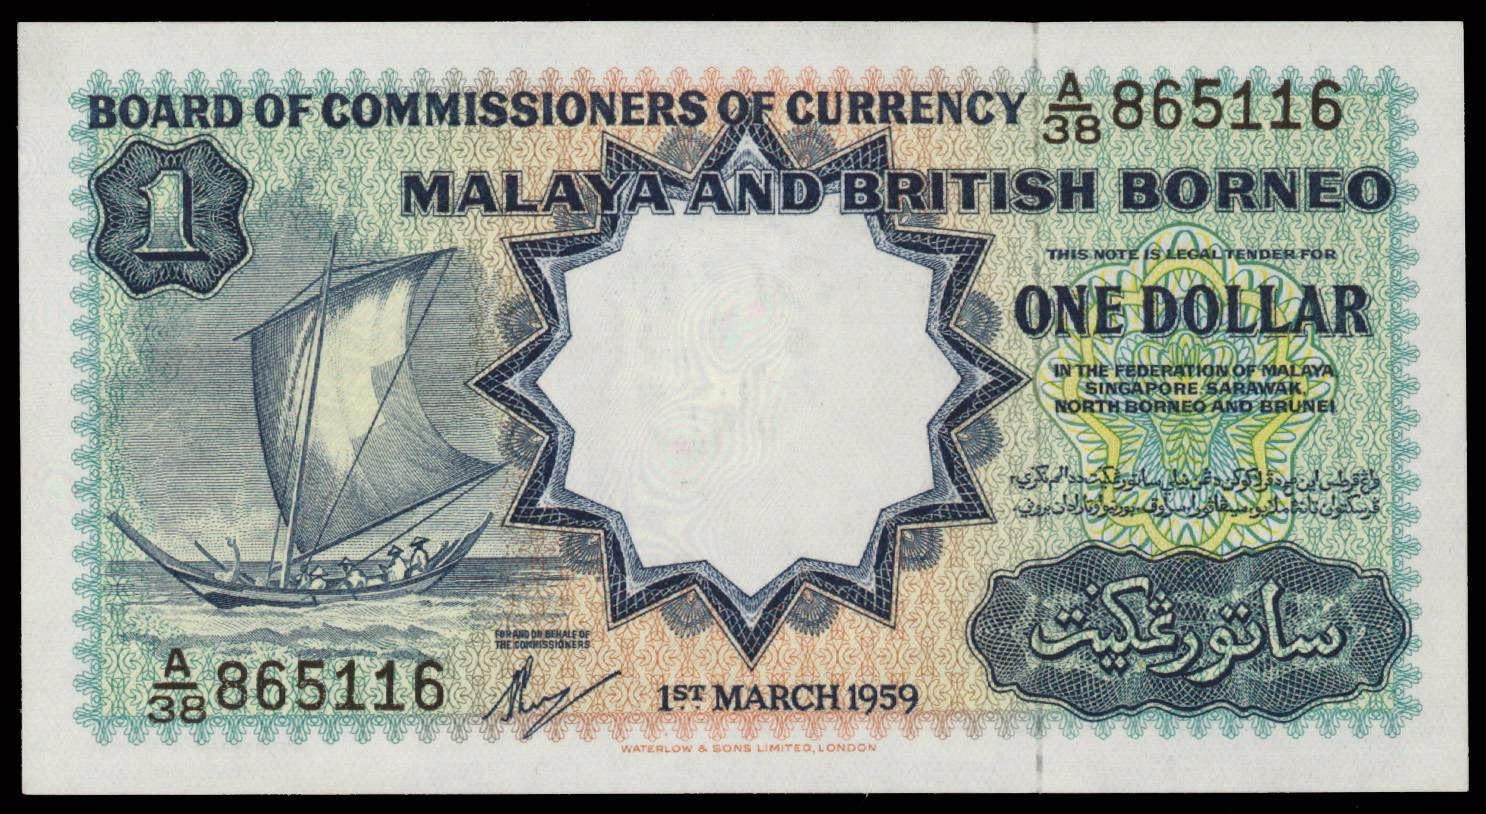 Malaya and British Borneo dollar